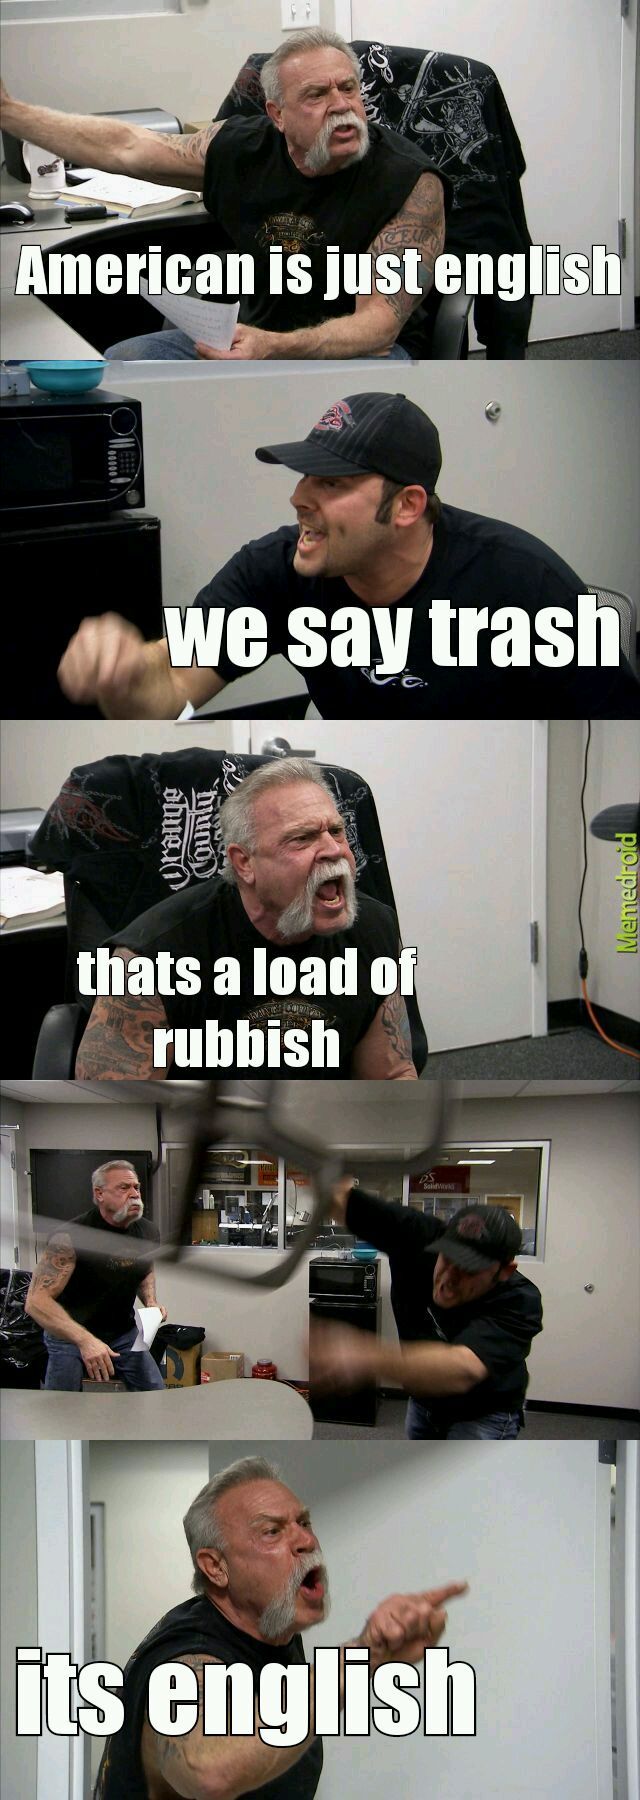 trash - meme